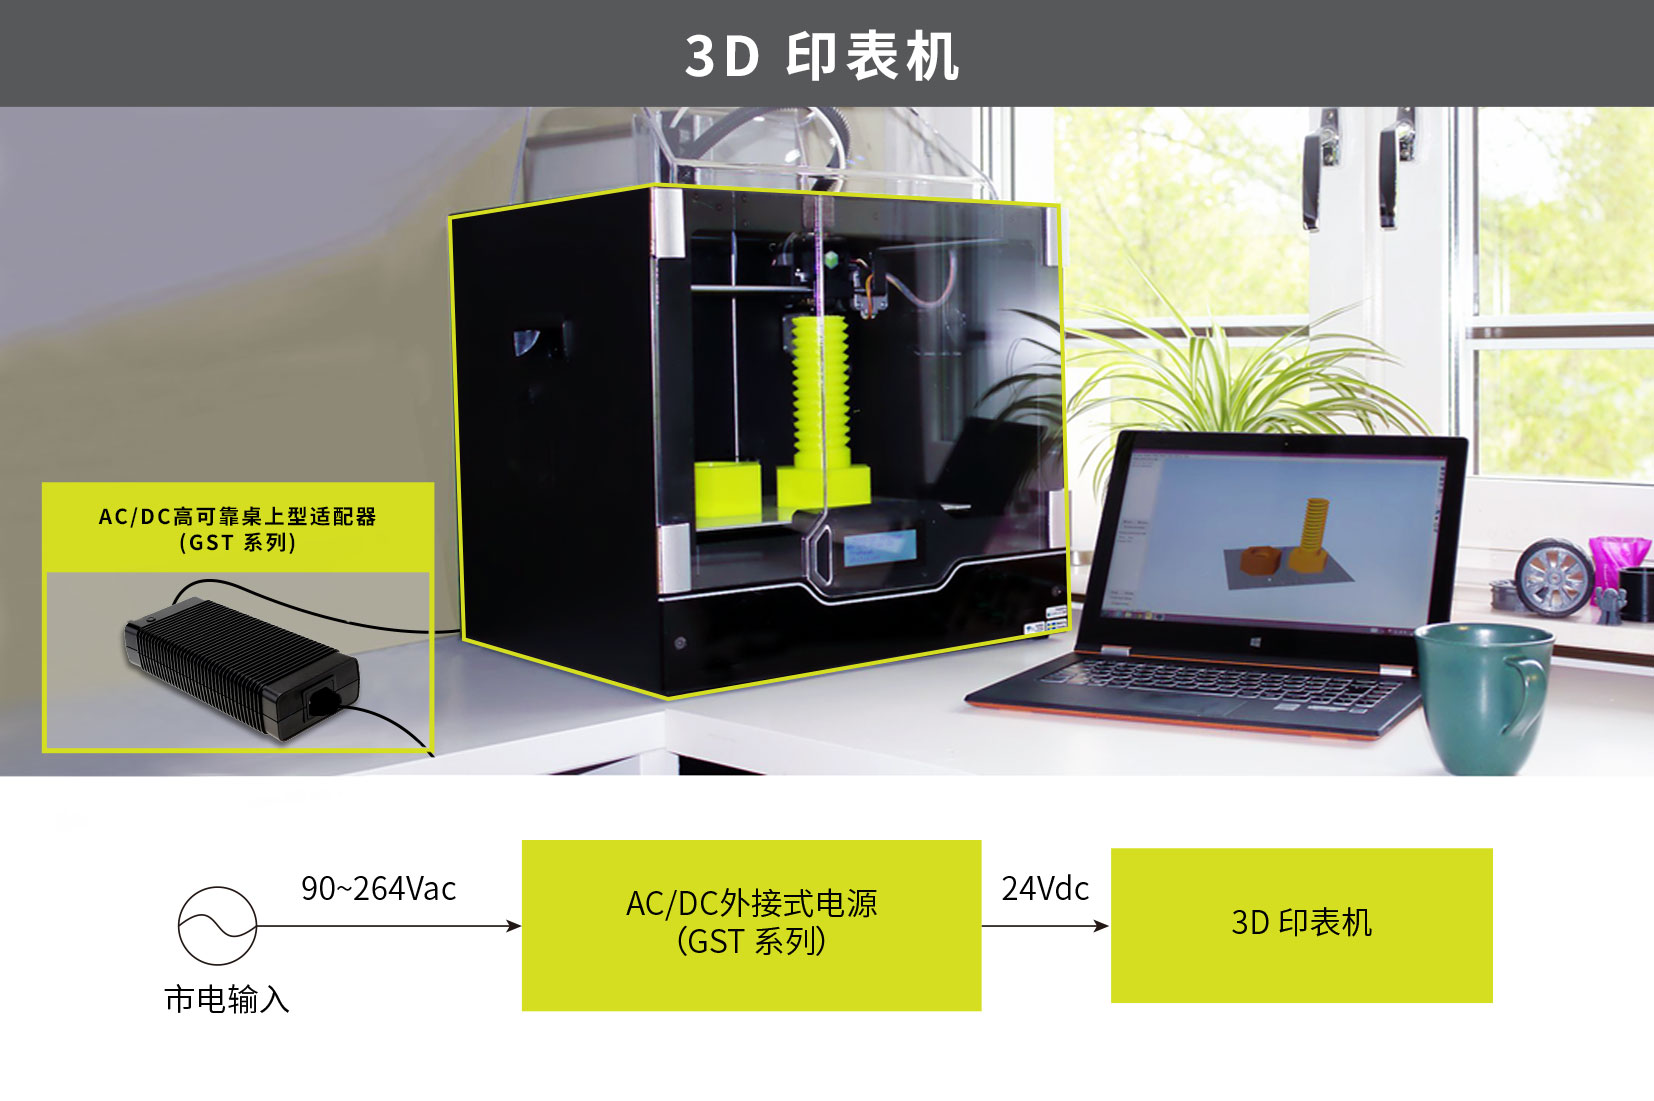 MEAN WELL GST series, desktop type green adaptor, 3D printer